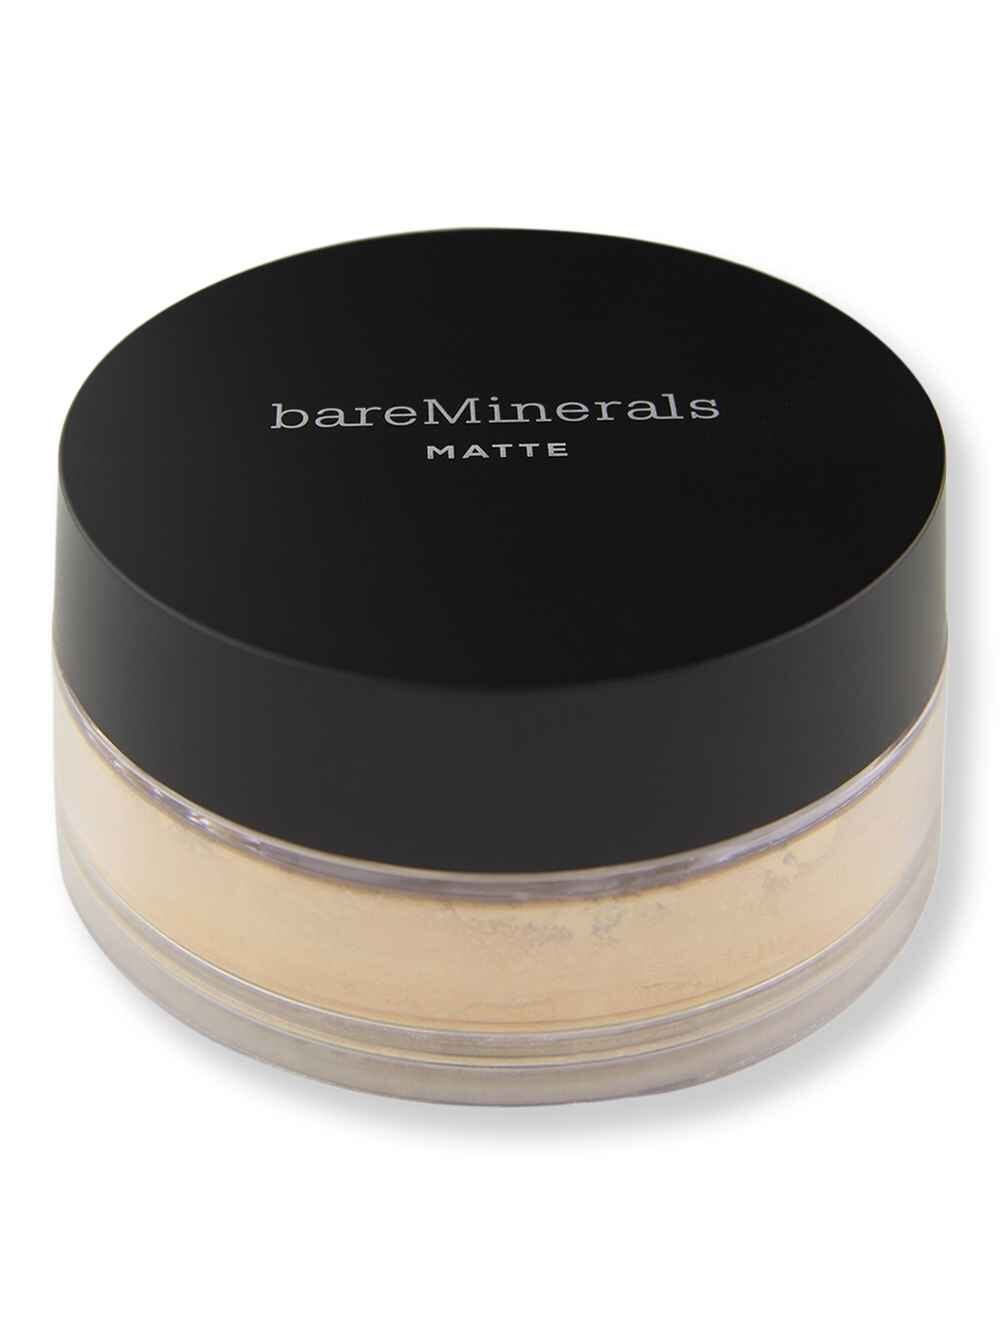 Bareminerals Bareminerals Loose Powder Matte Foundation SPF 15 Golden Medium 14 0.21 oz6 g Tinted Moisturizers & Foundations 